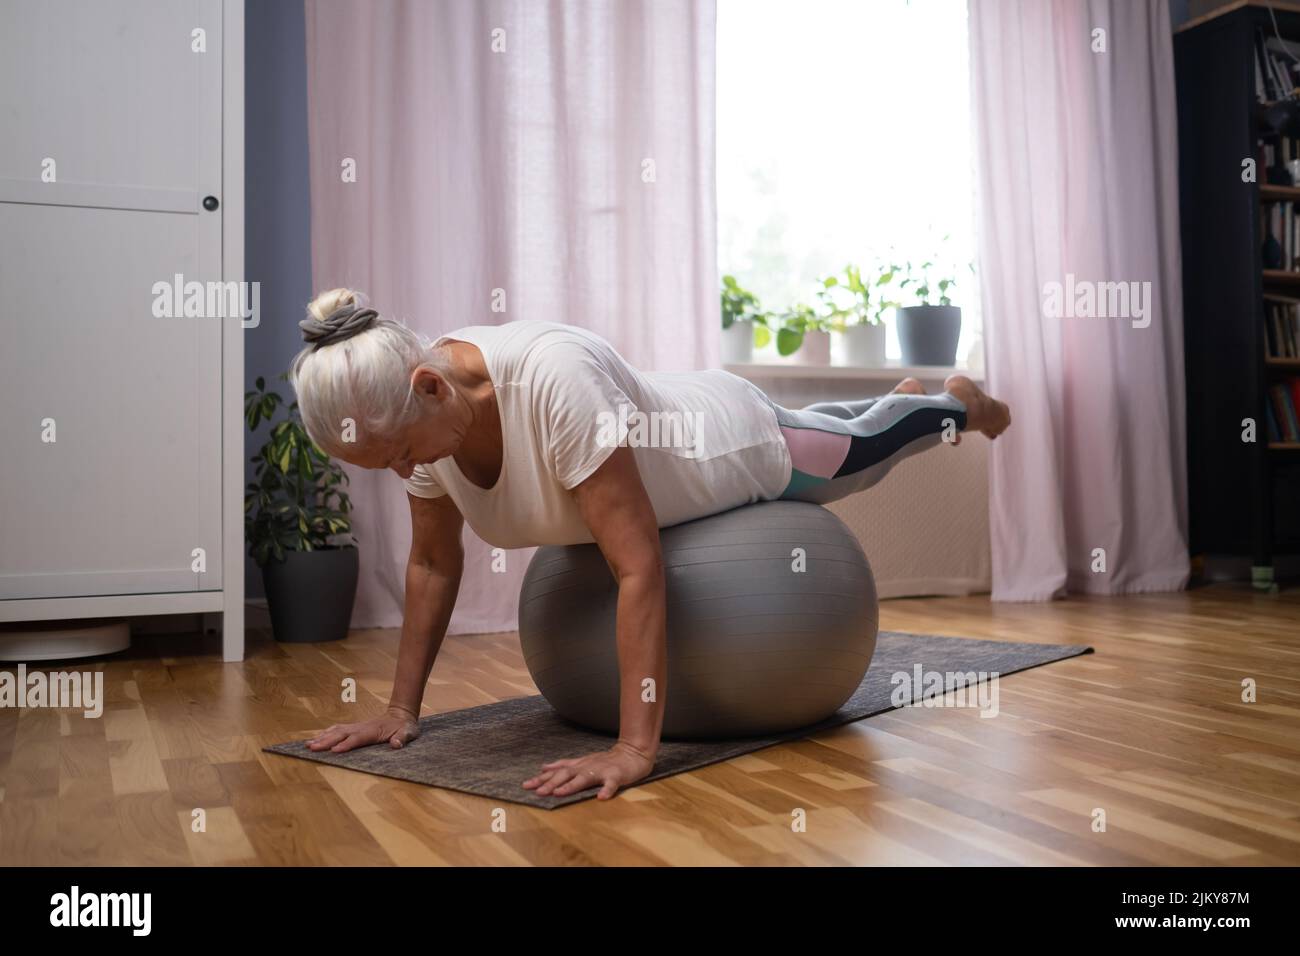 Entrenamiento en casa. Mujer mayor deportiva haciendo una tabla de yoga con una pelota haciendo ejercicio en la sala de estar Foto de stock